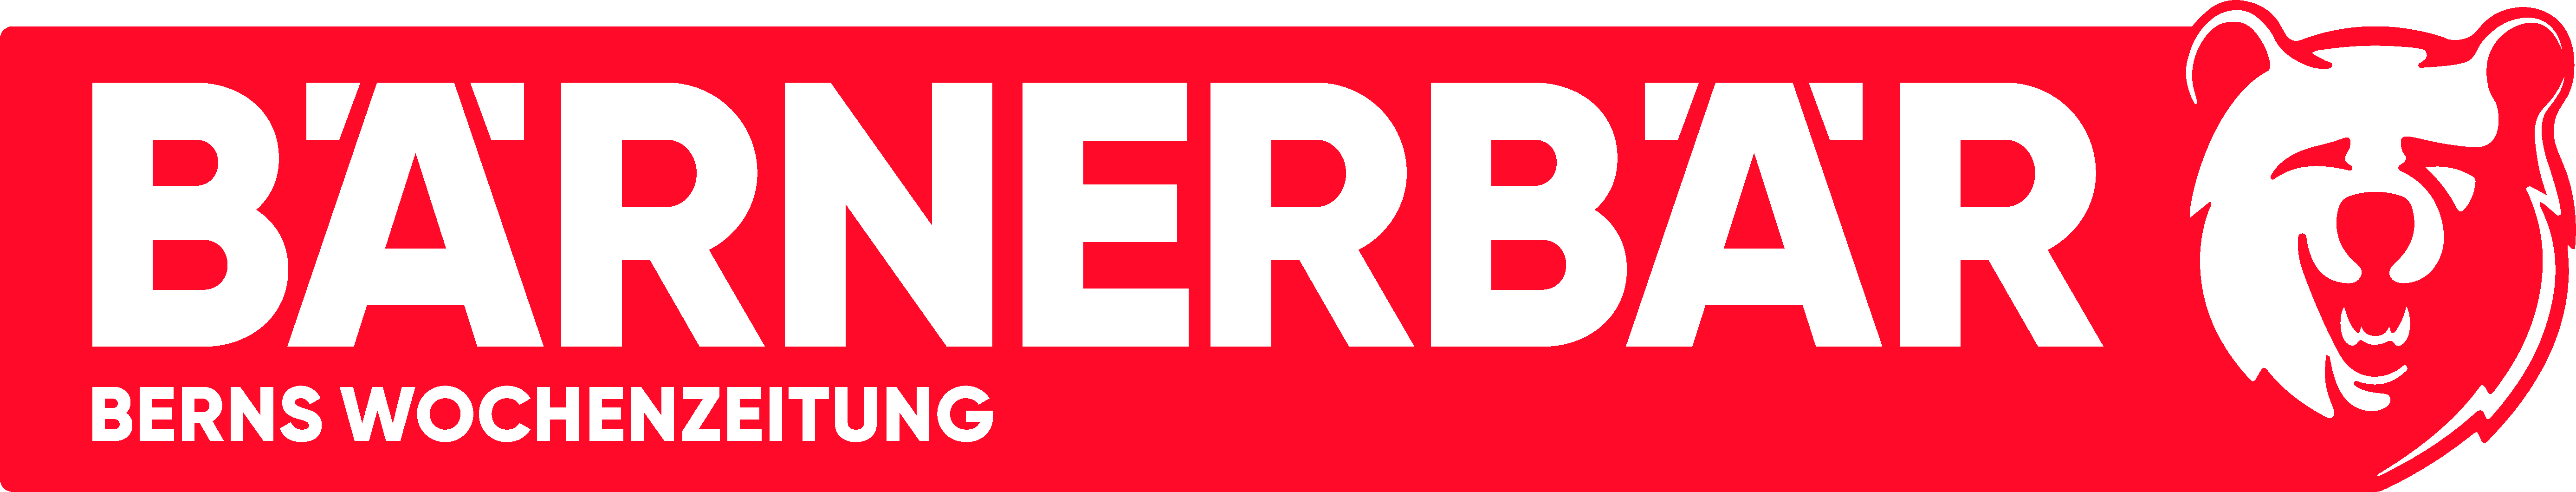 Bärnerbär-Logo-2024-Berns-Wochenzeitung